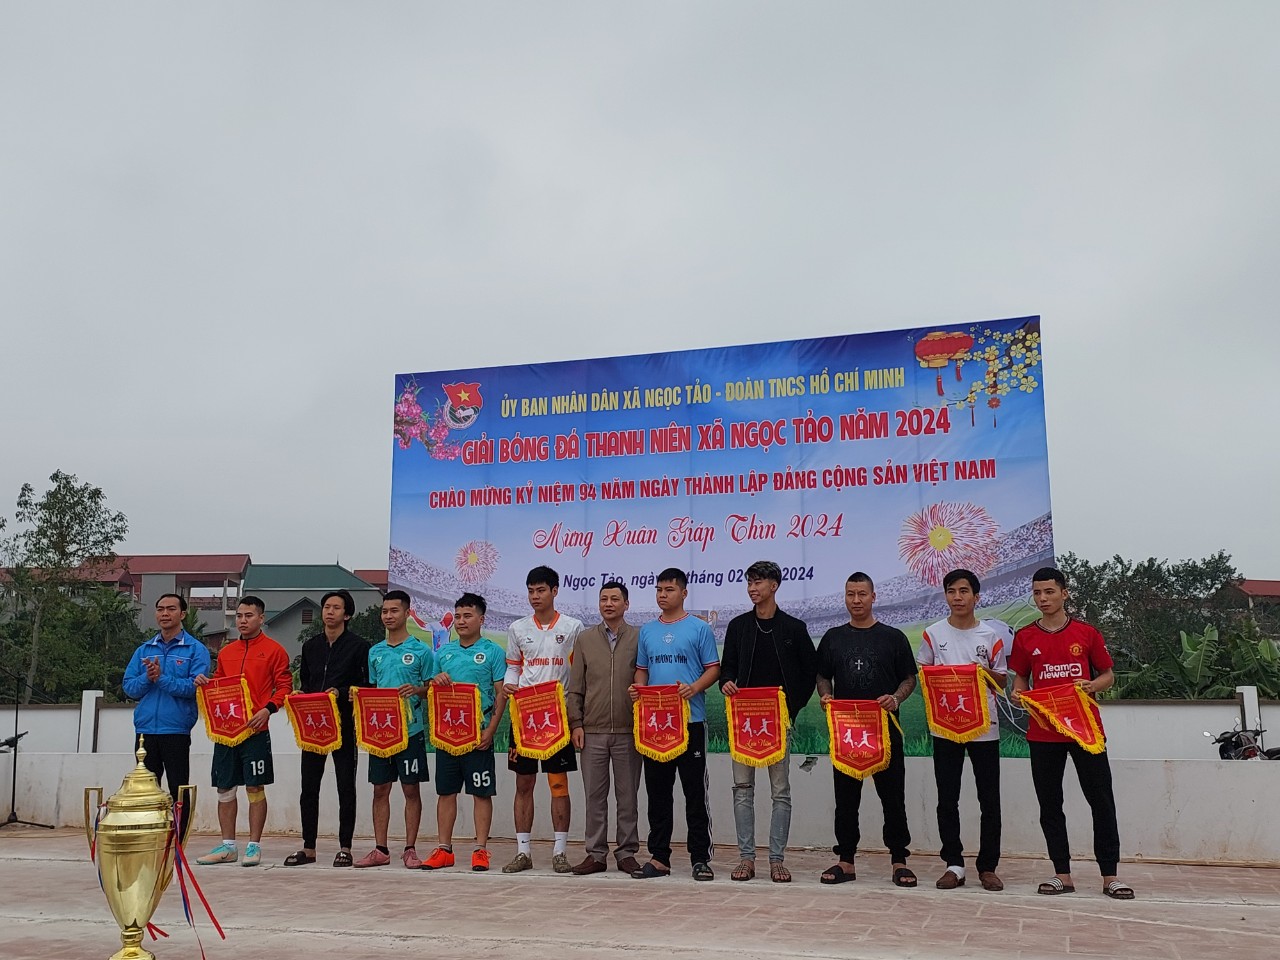 Giải bóng đá thanh niên xã Ngọc Tảo nhân dịp chào Xuân Giáp Thìn 2024 và kỷ niệm 94 năm ngày thành lập Đảng Cộng sản Việt Nam (03/02/1930 -03/02/2024).